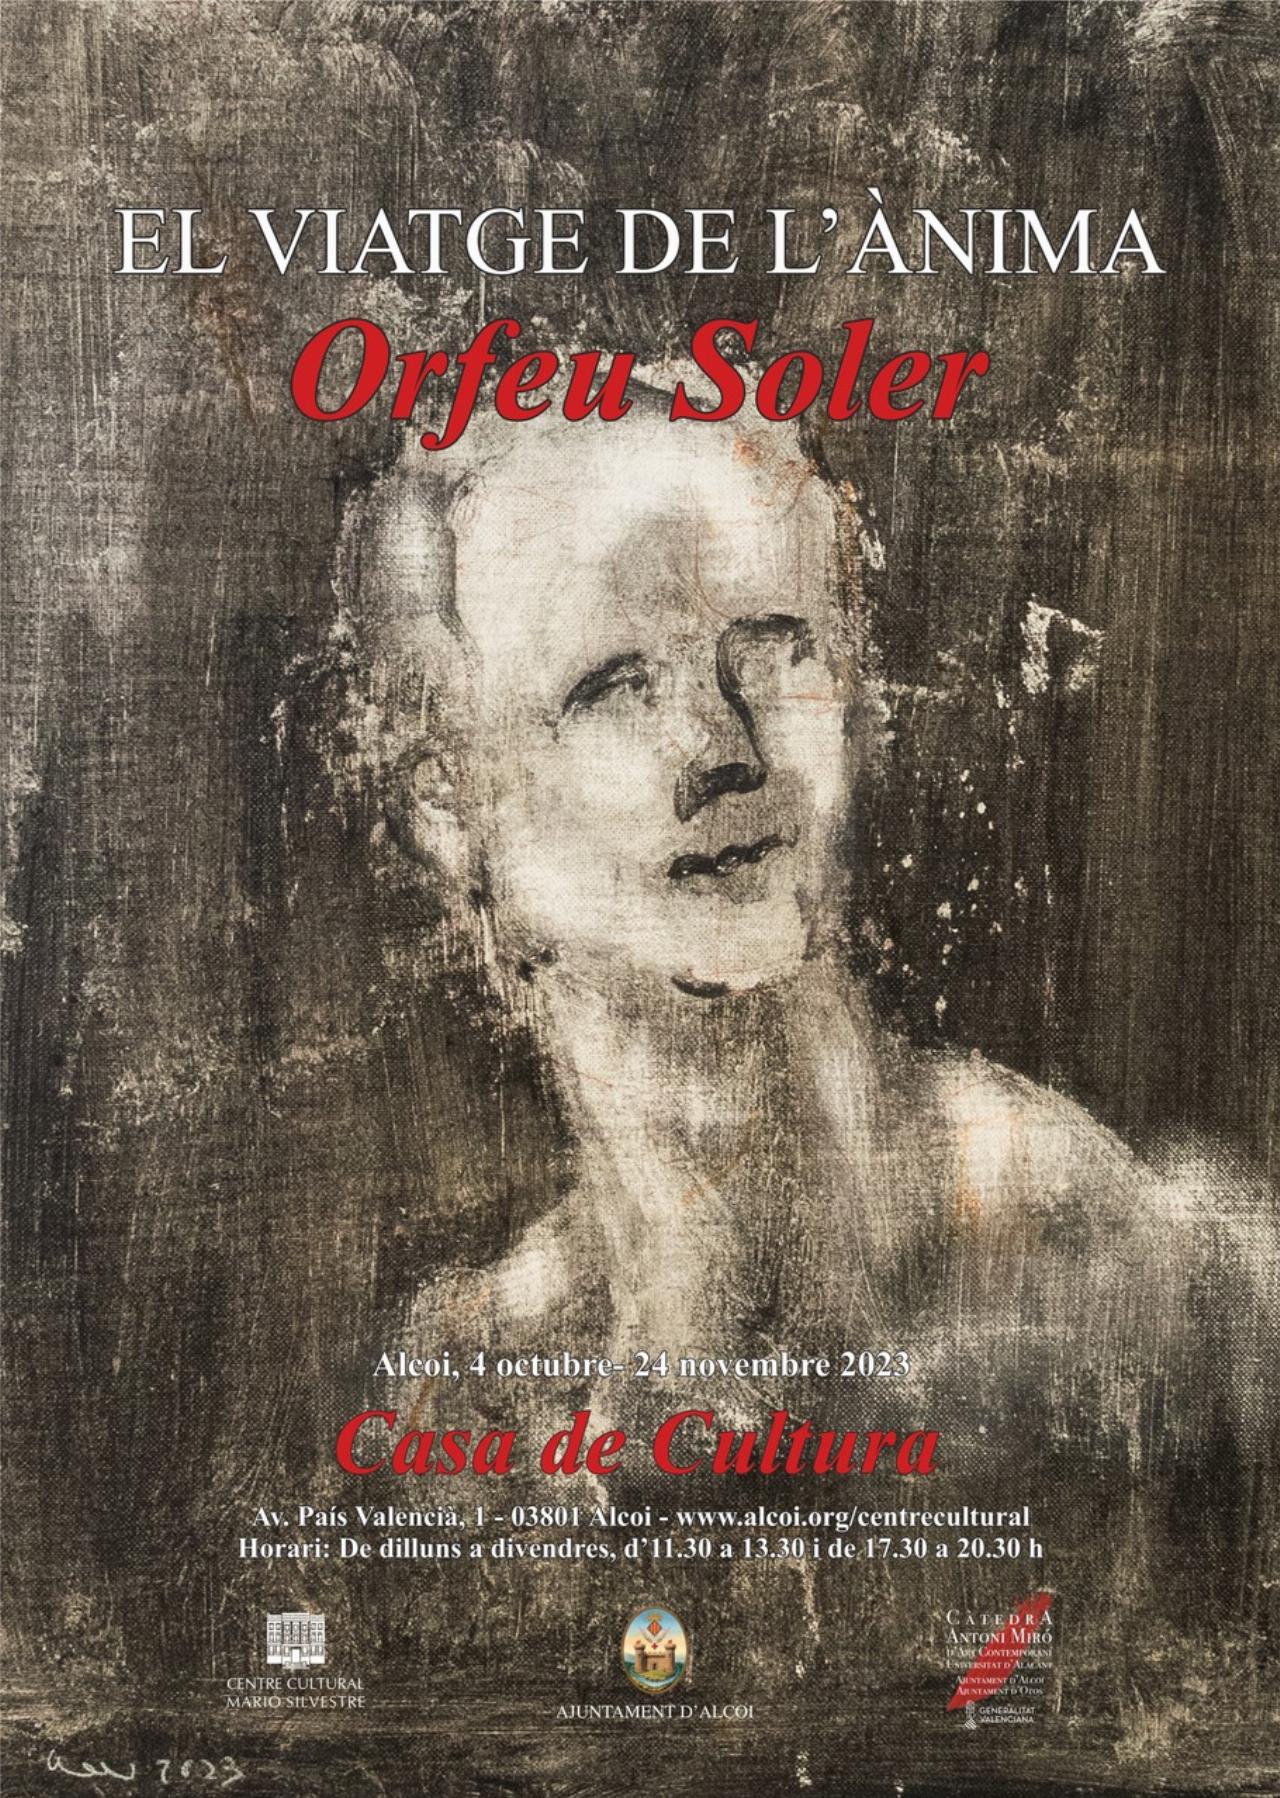 ORFEU SOLER, Obra 1997-2023